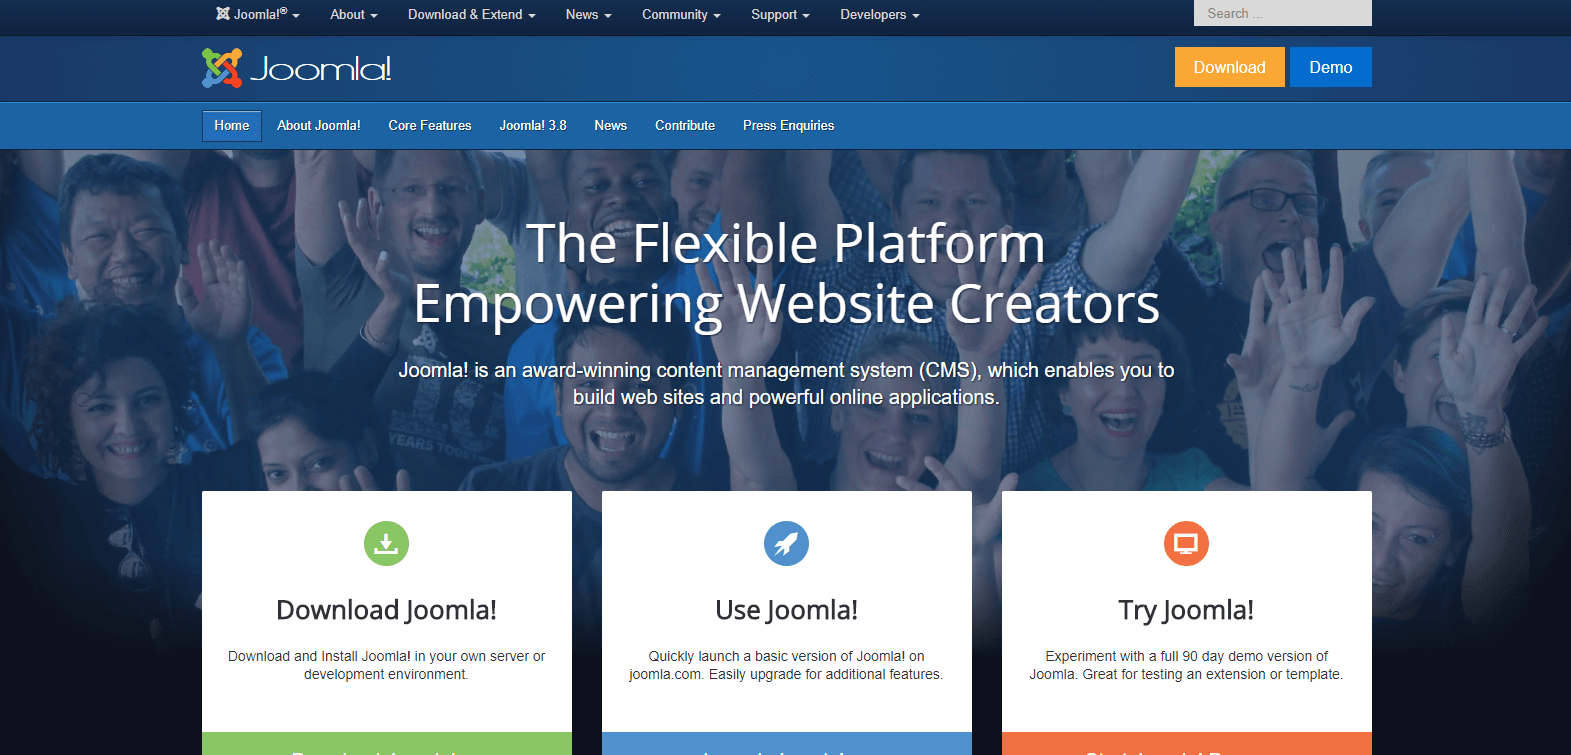 Thiết kế web bằng Joomla là gì?